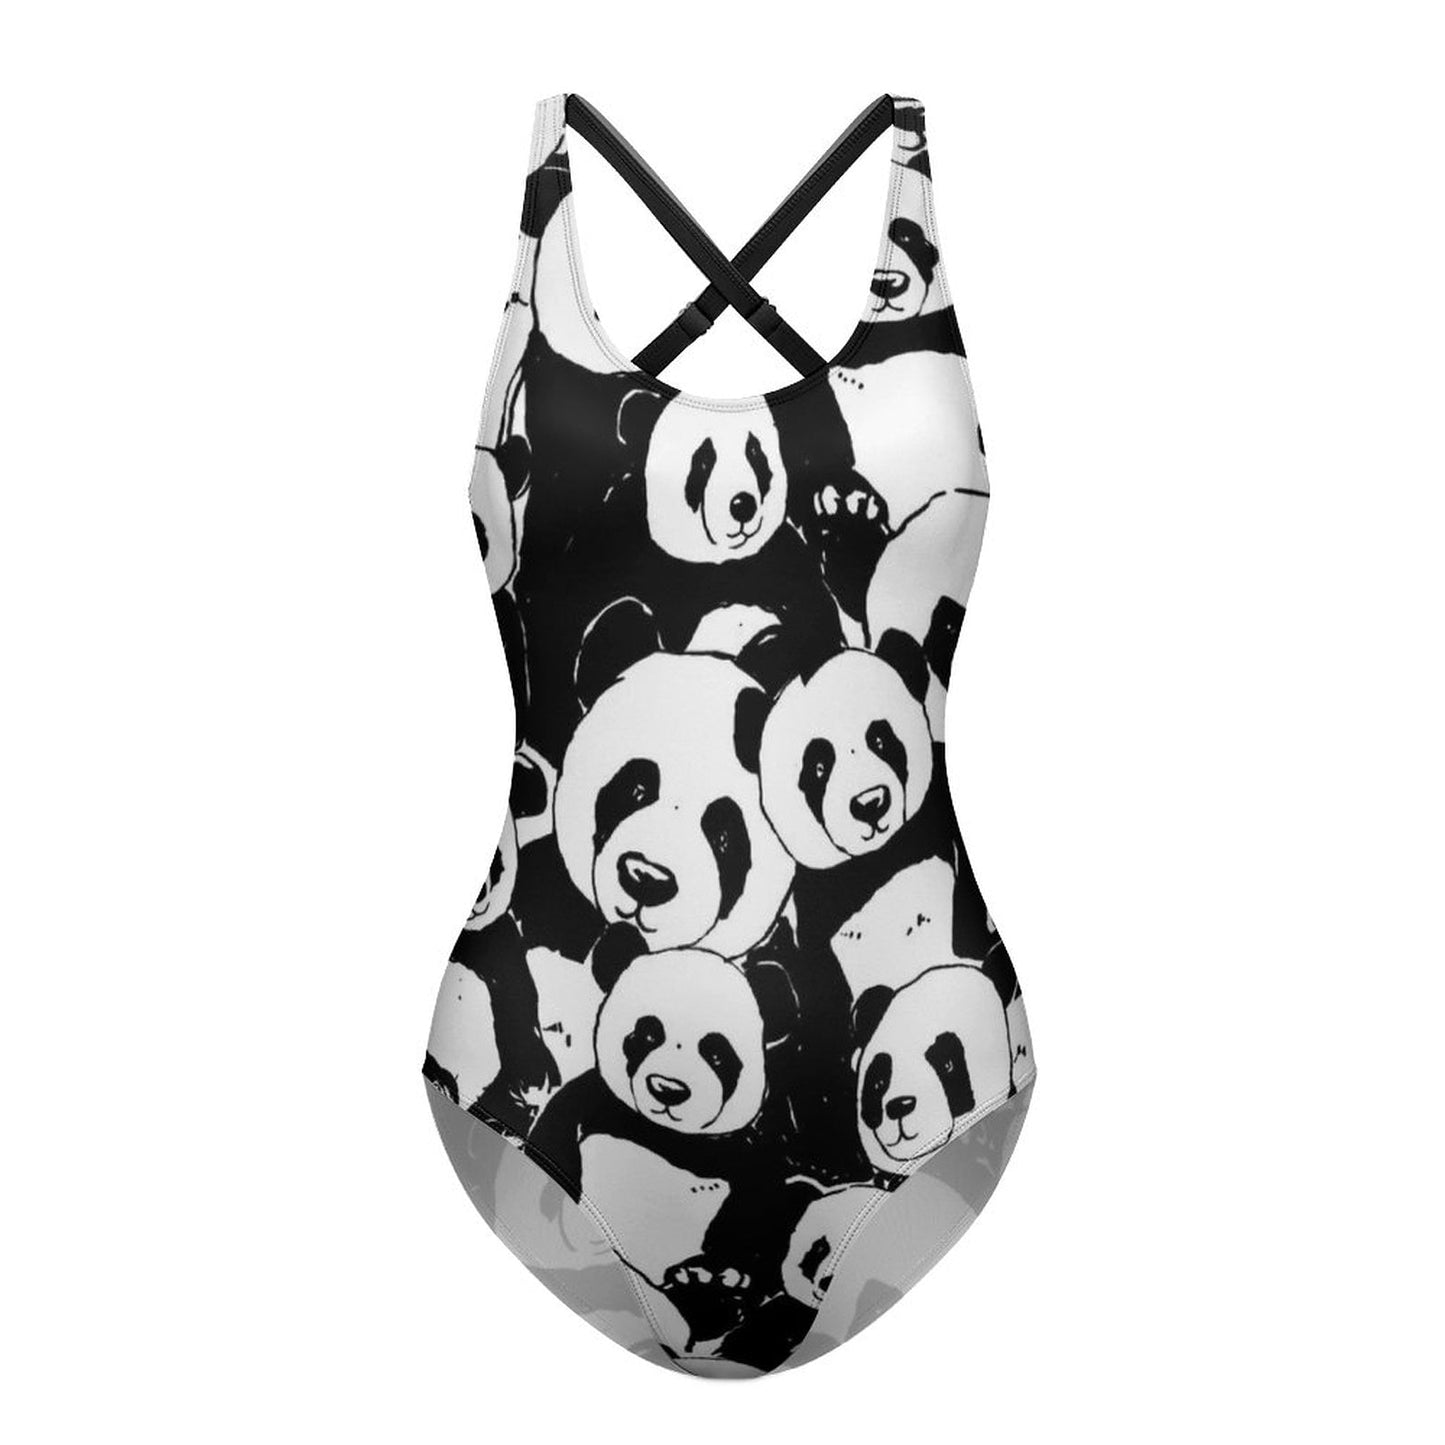 Panda Swimsuit